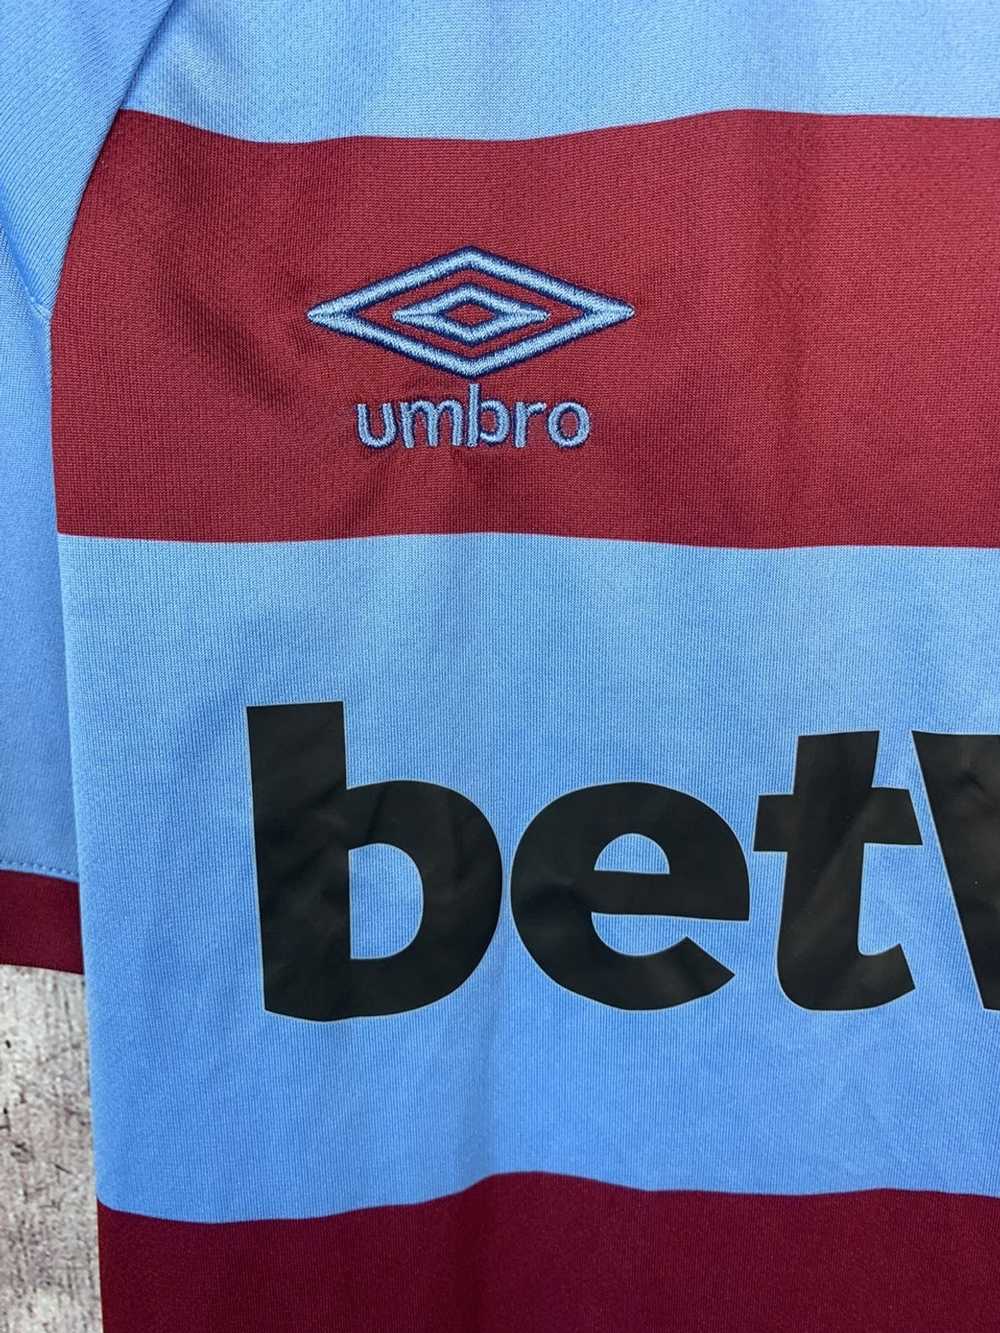 Soccer Jersey × Vintage Umbro West Ham United Jer… - image 2